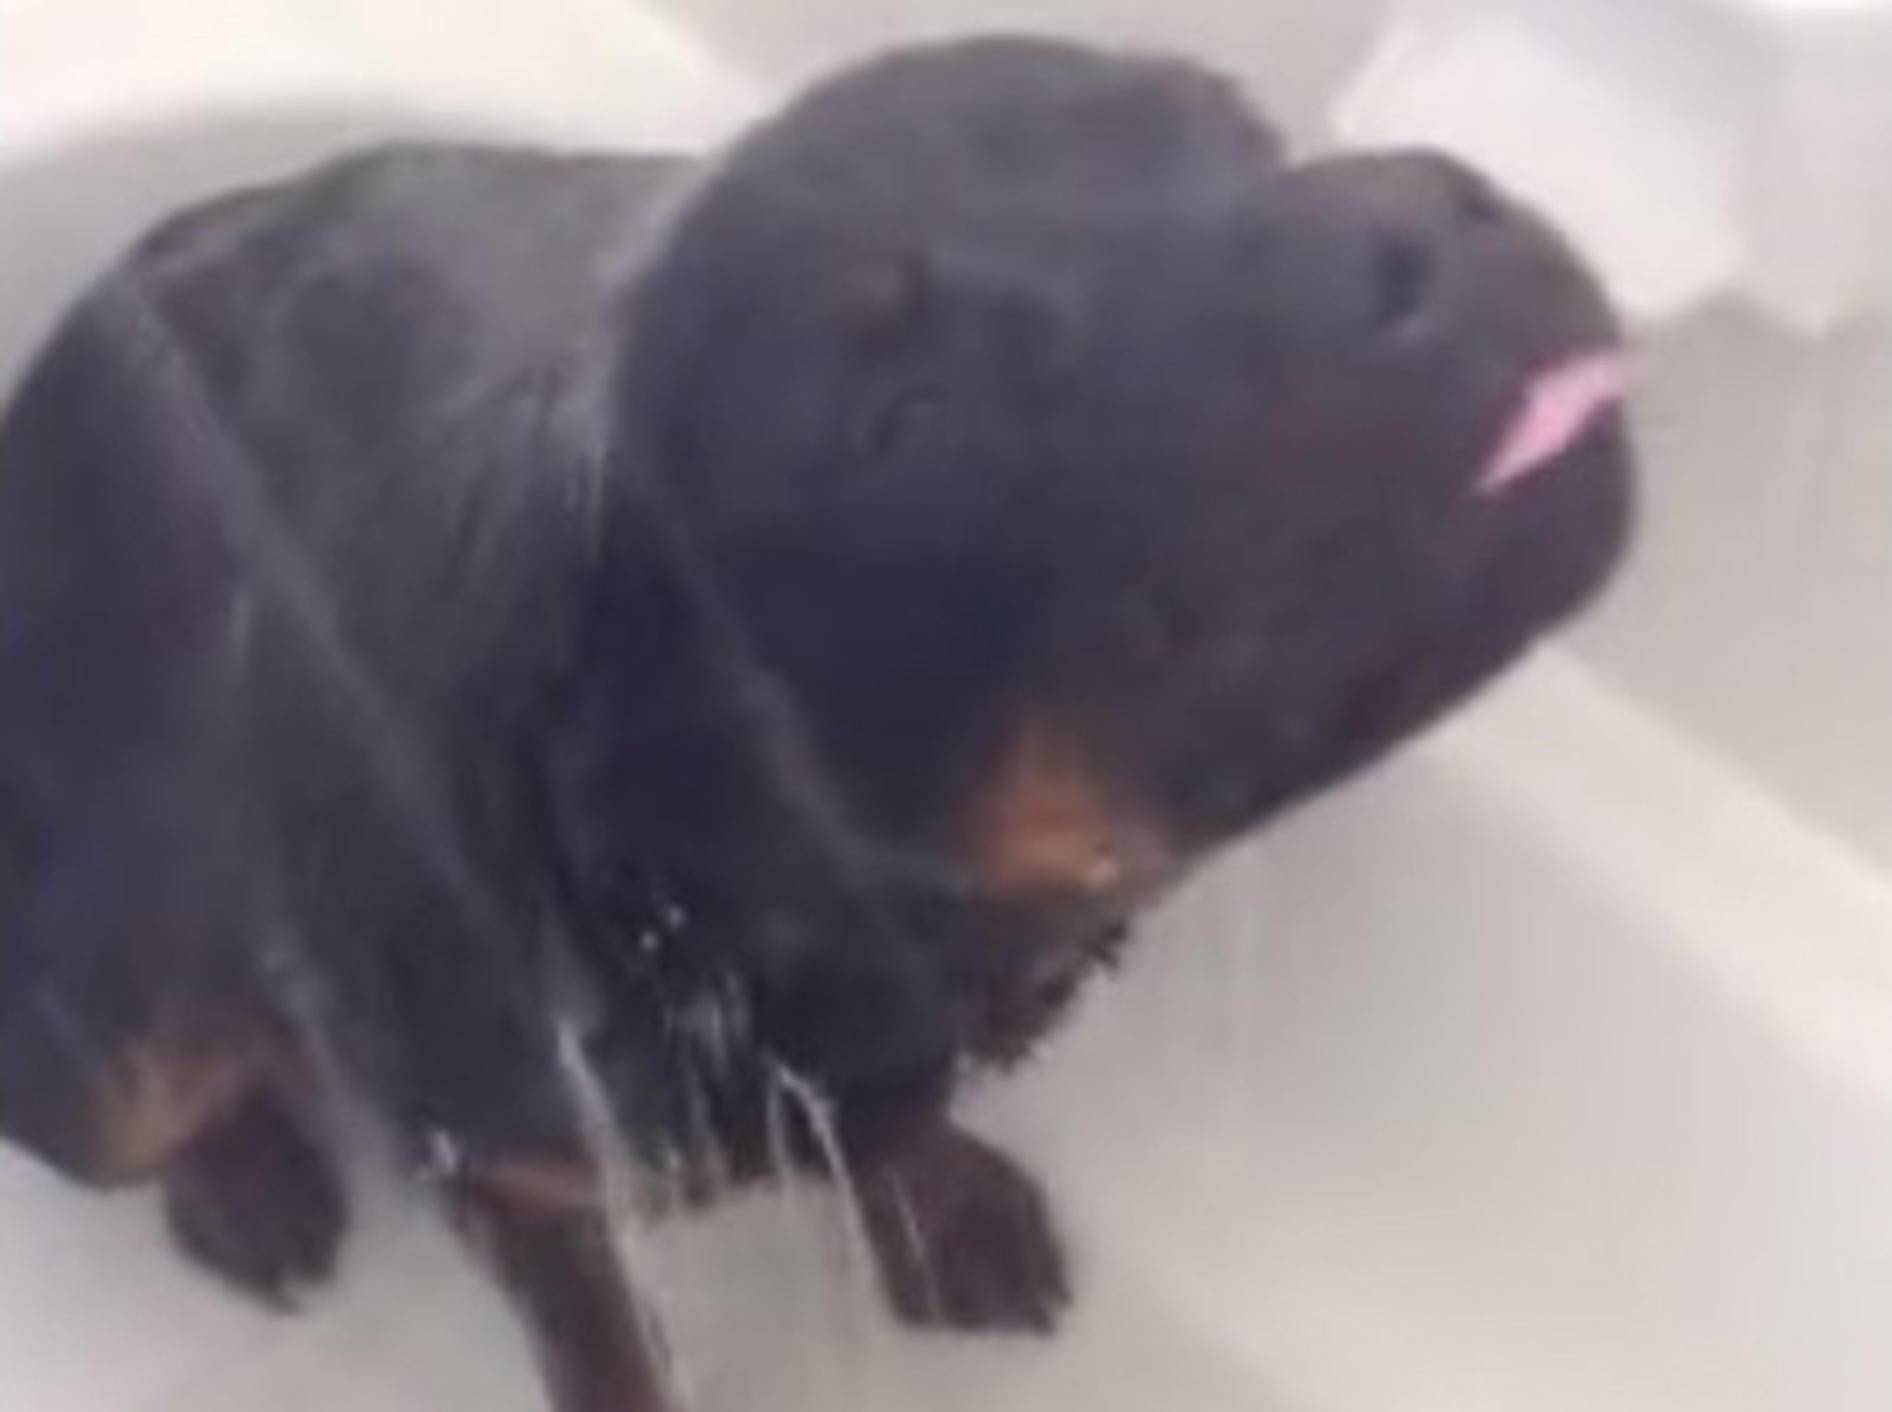 Süßer Rottweiler liebt Duschen über alles! – Bild: Youtube / Life with Oz the Rottweiler